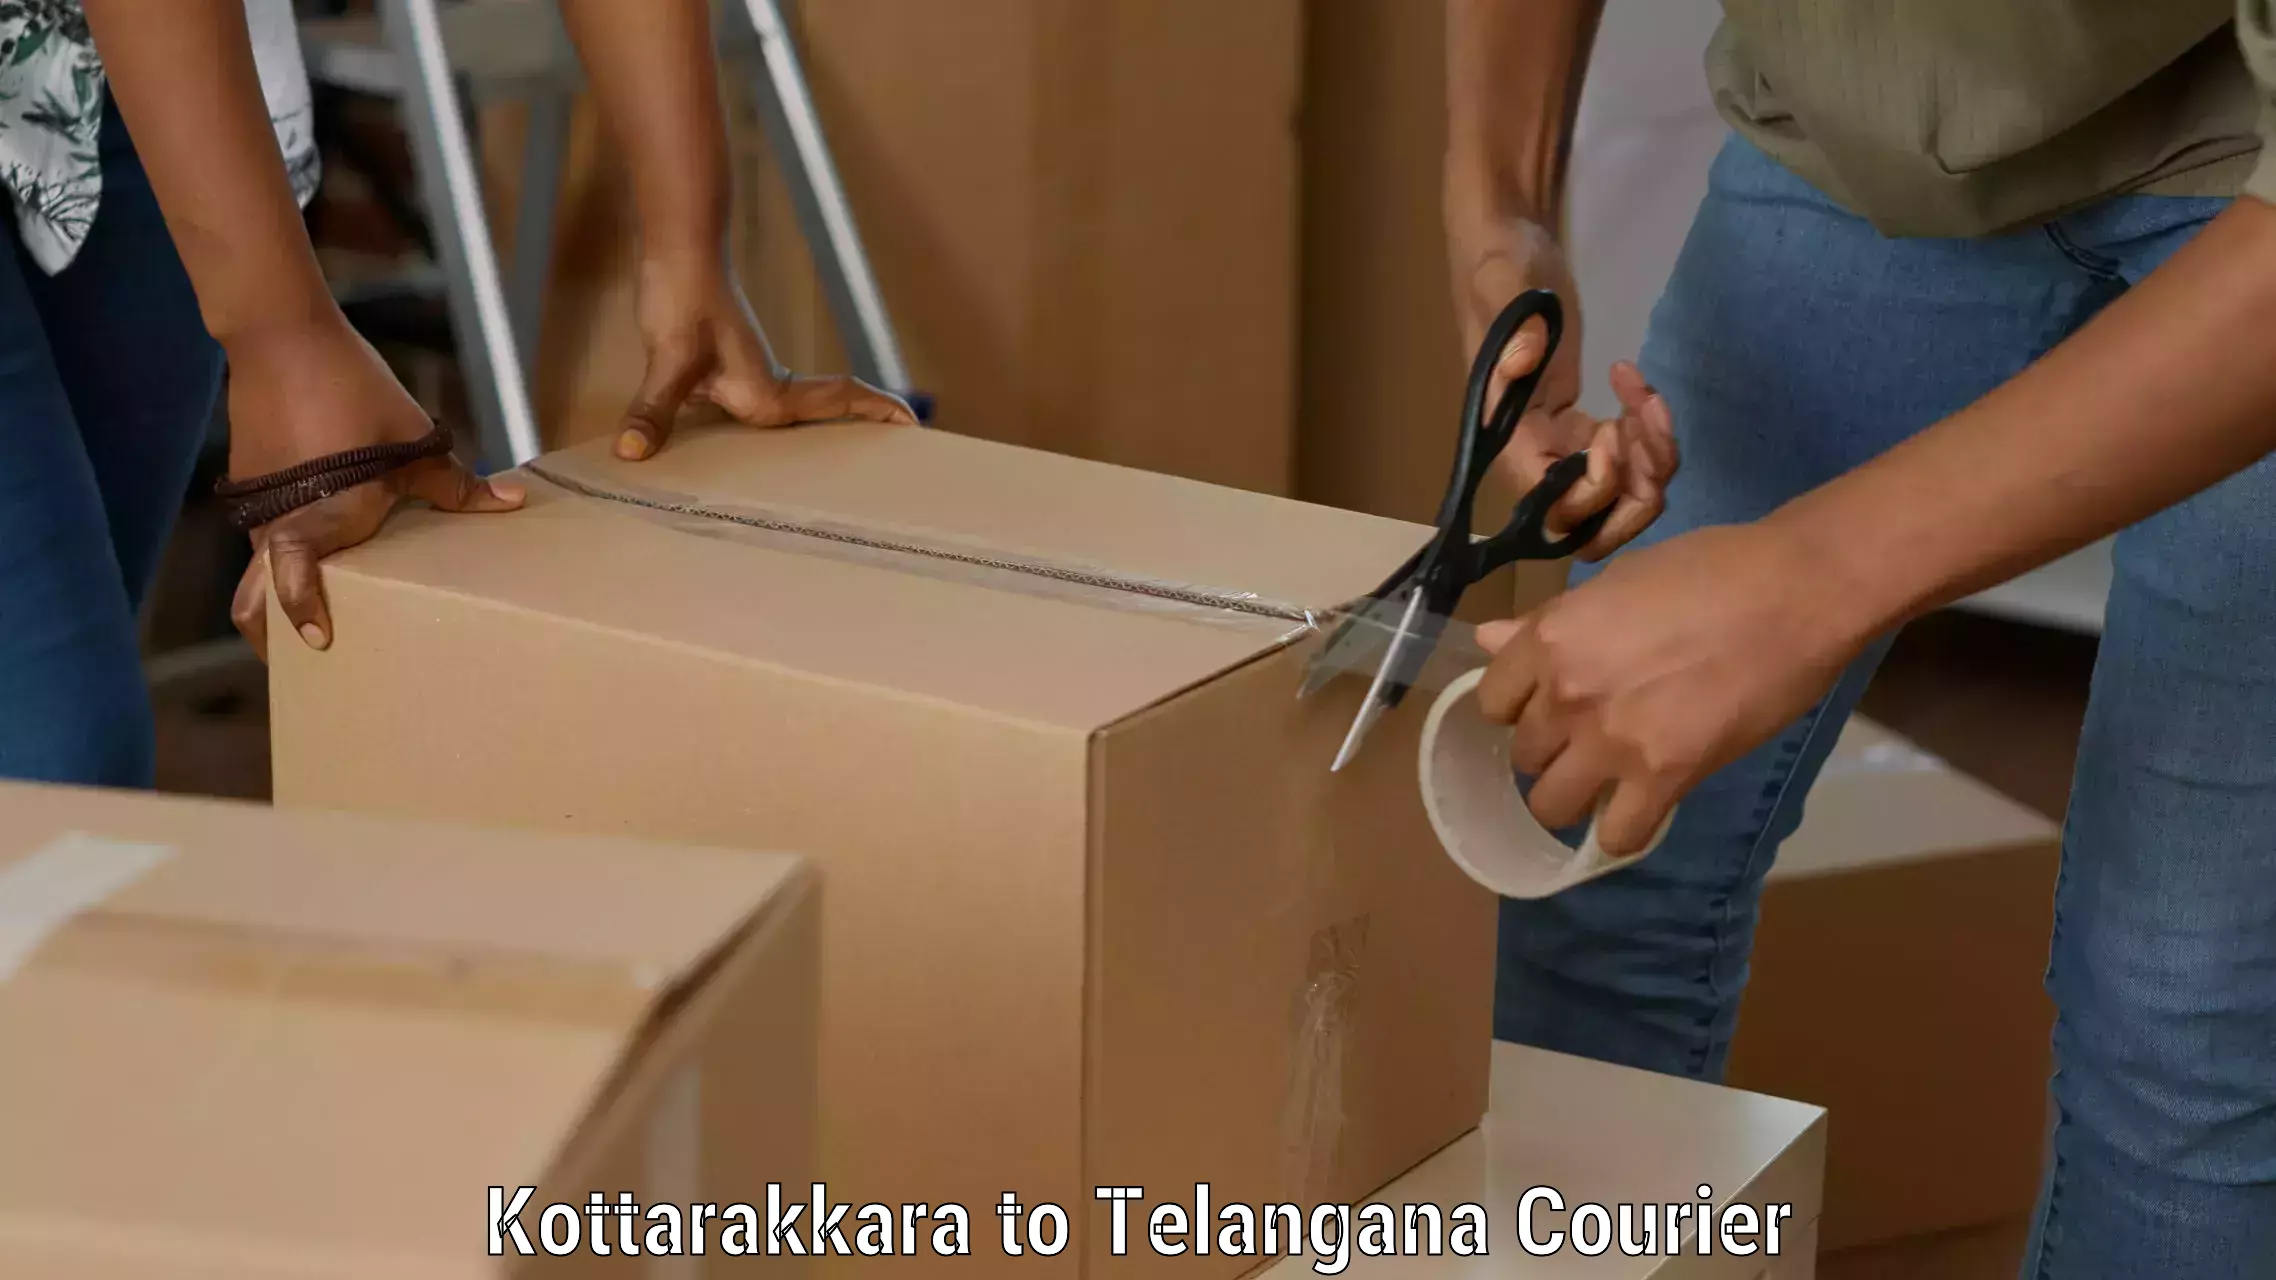 Personalized courier experiences Kottarakkara to Kothur